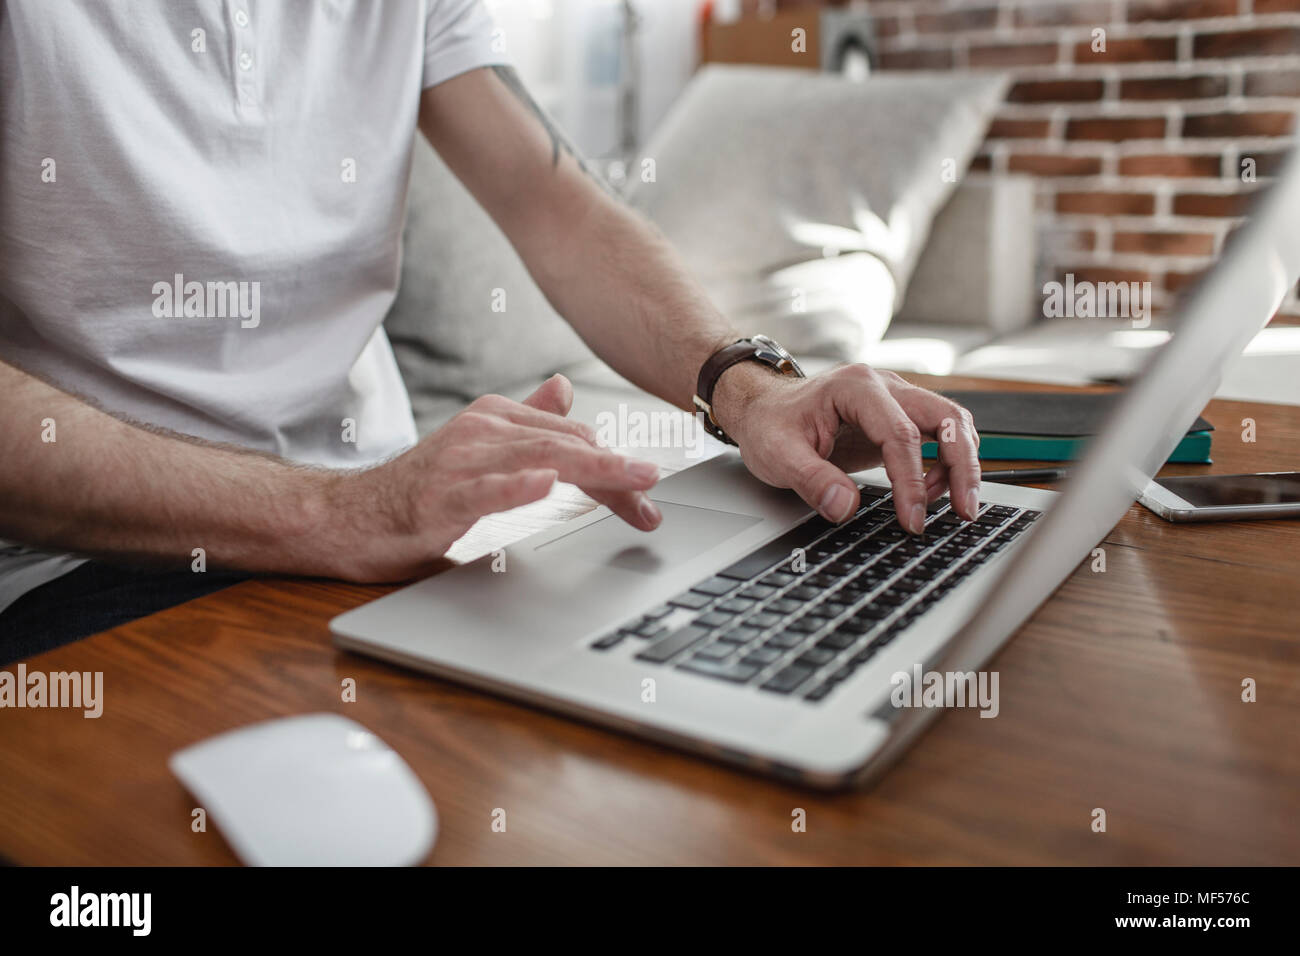 Man's hands sur clavier et touchpad d'ordinateur portable, vue partielle Banque D'Images